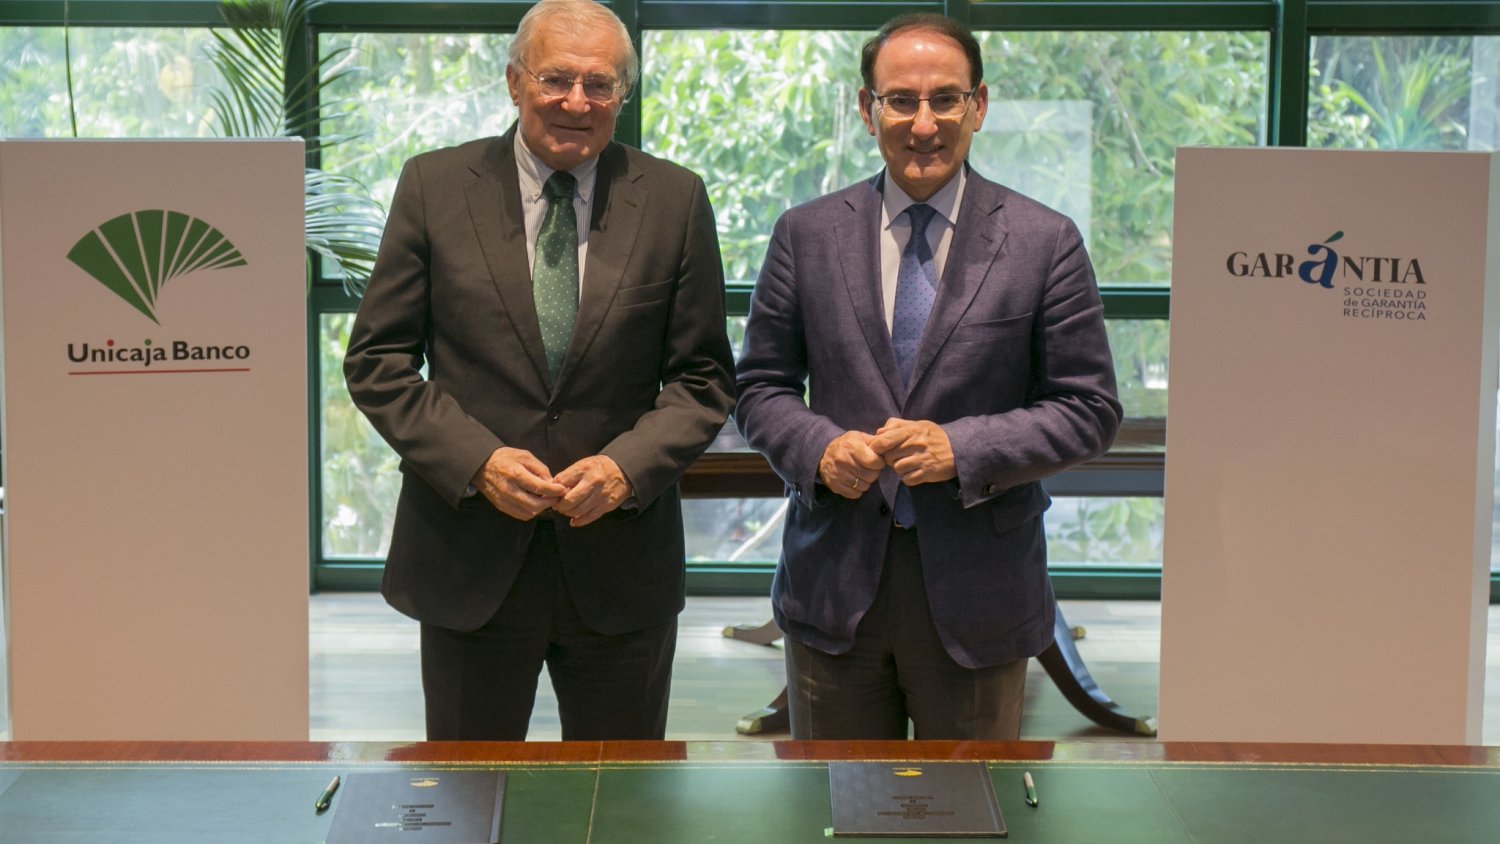 Unicaja Banco y Garántia renuevan su acuerdo y destinan 160 millones de euros de préstamos con avales